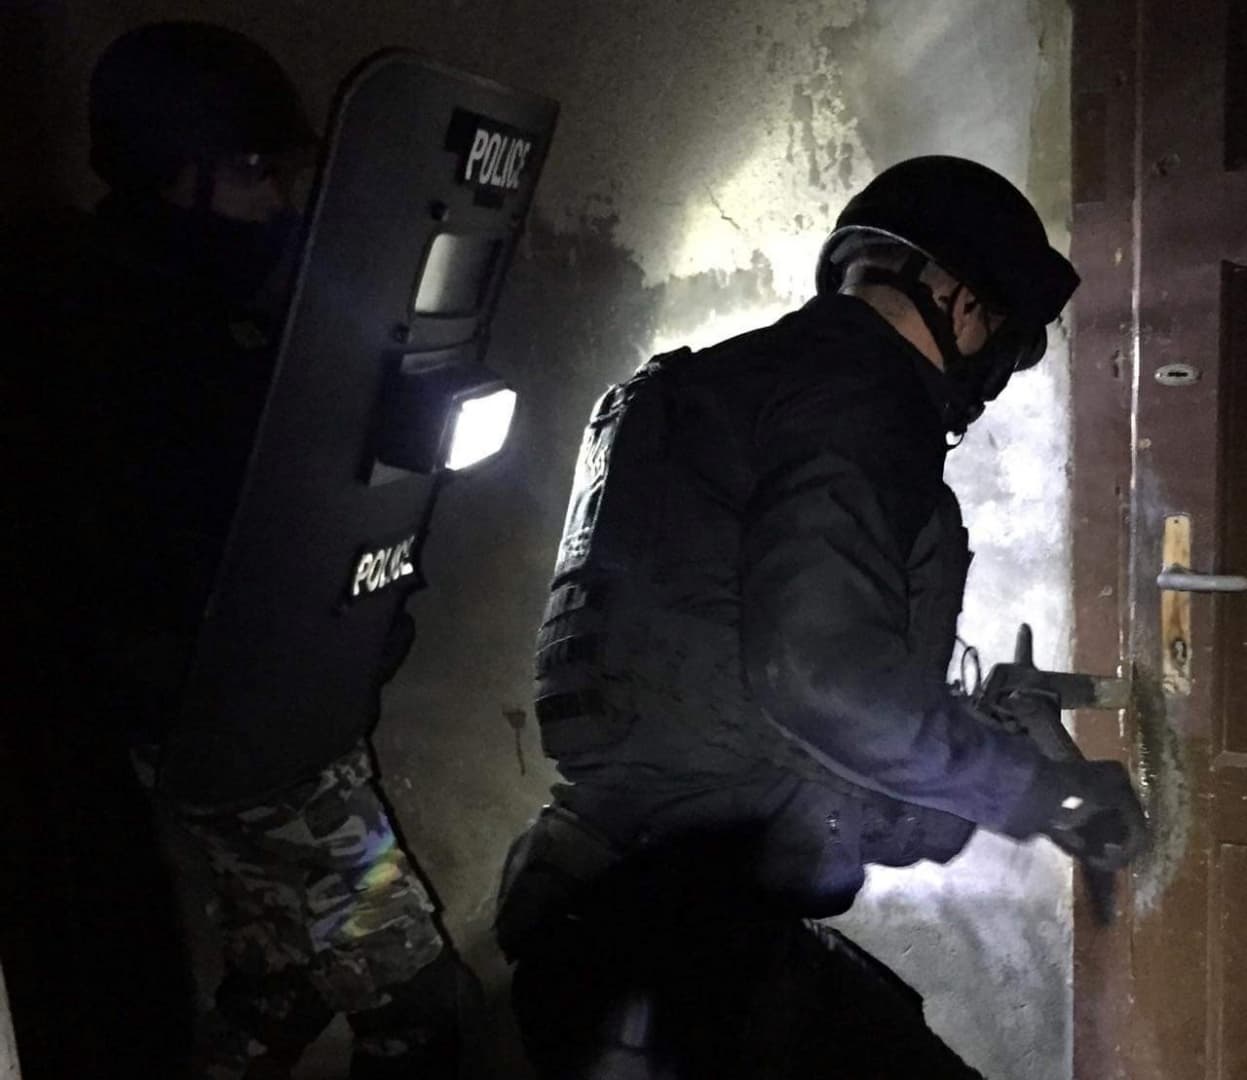 Összehangolt drograzzia zajlott Győrben, fiataloknak árult kokaint és marihuánát egy hatfős banda